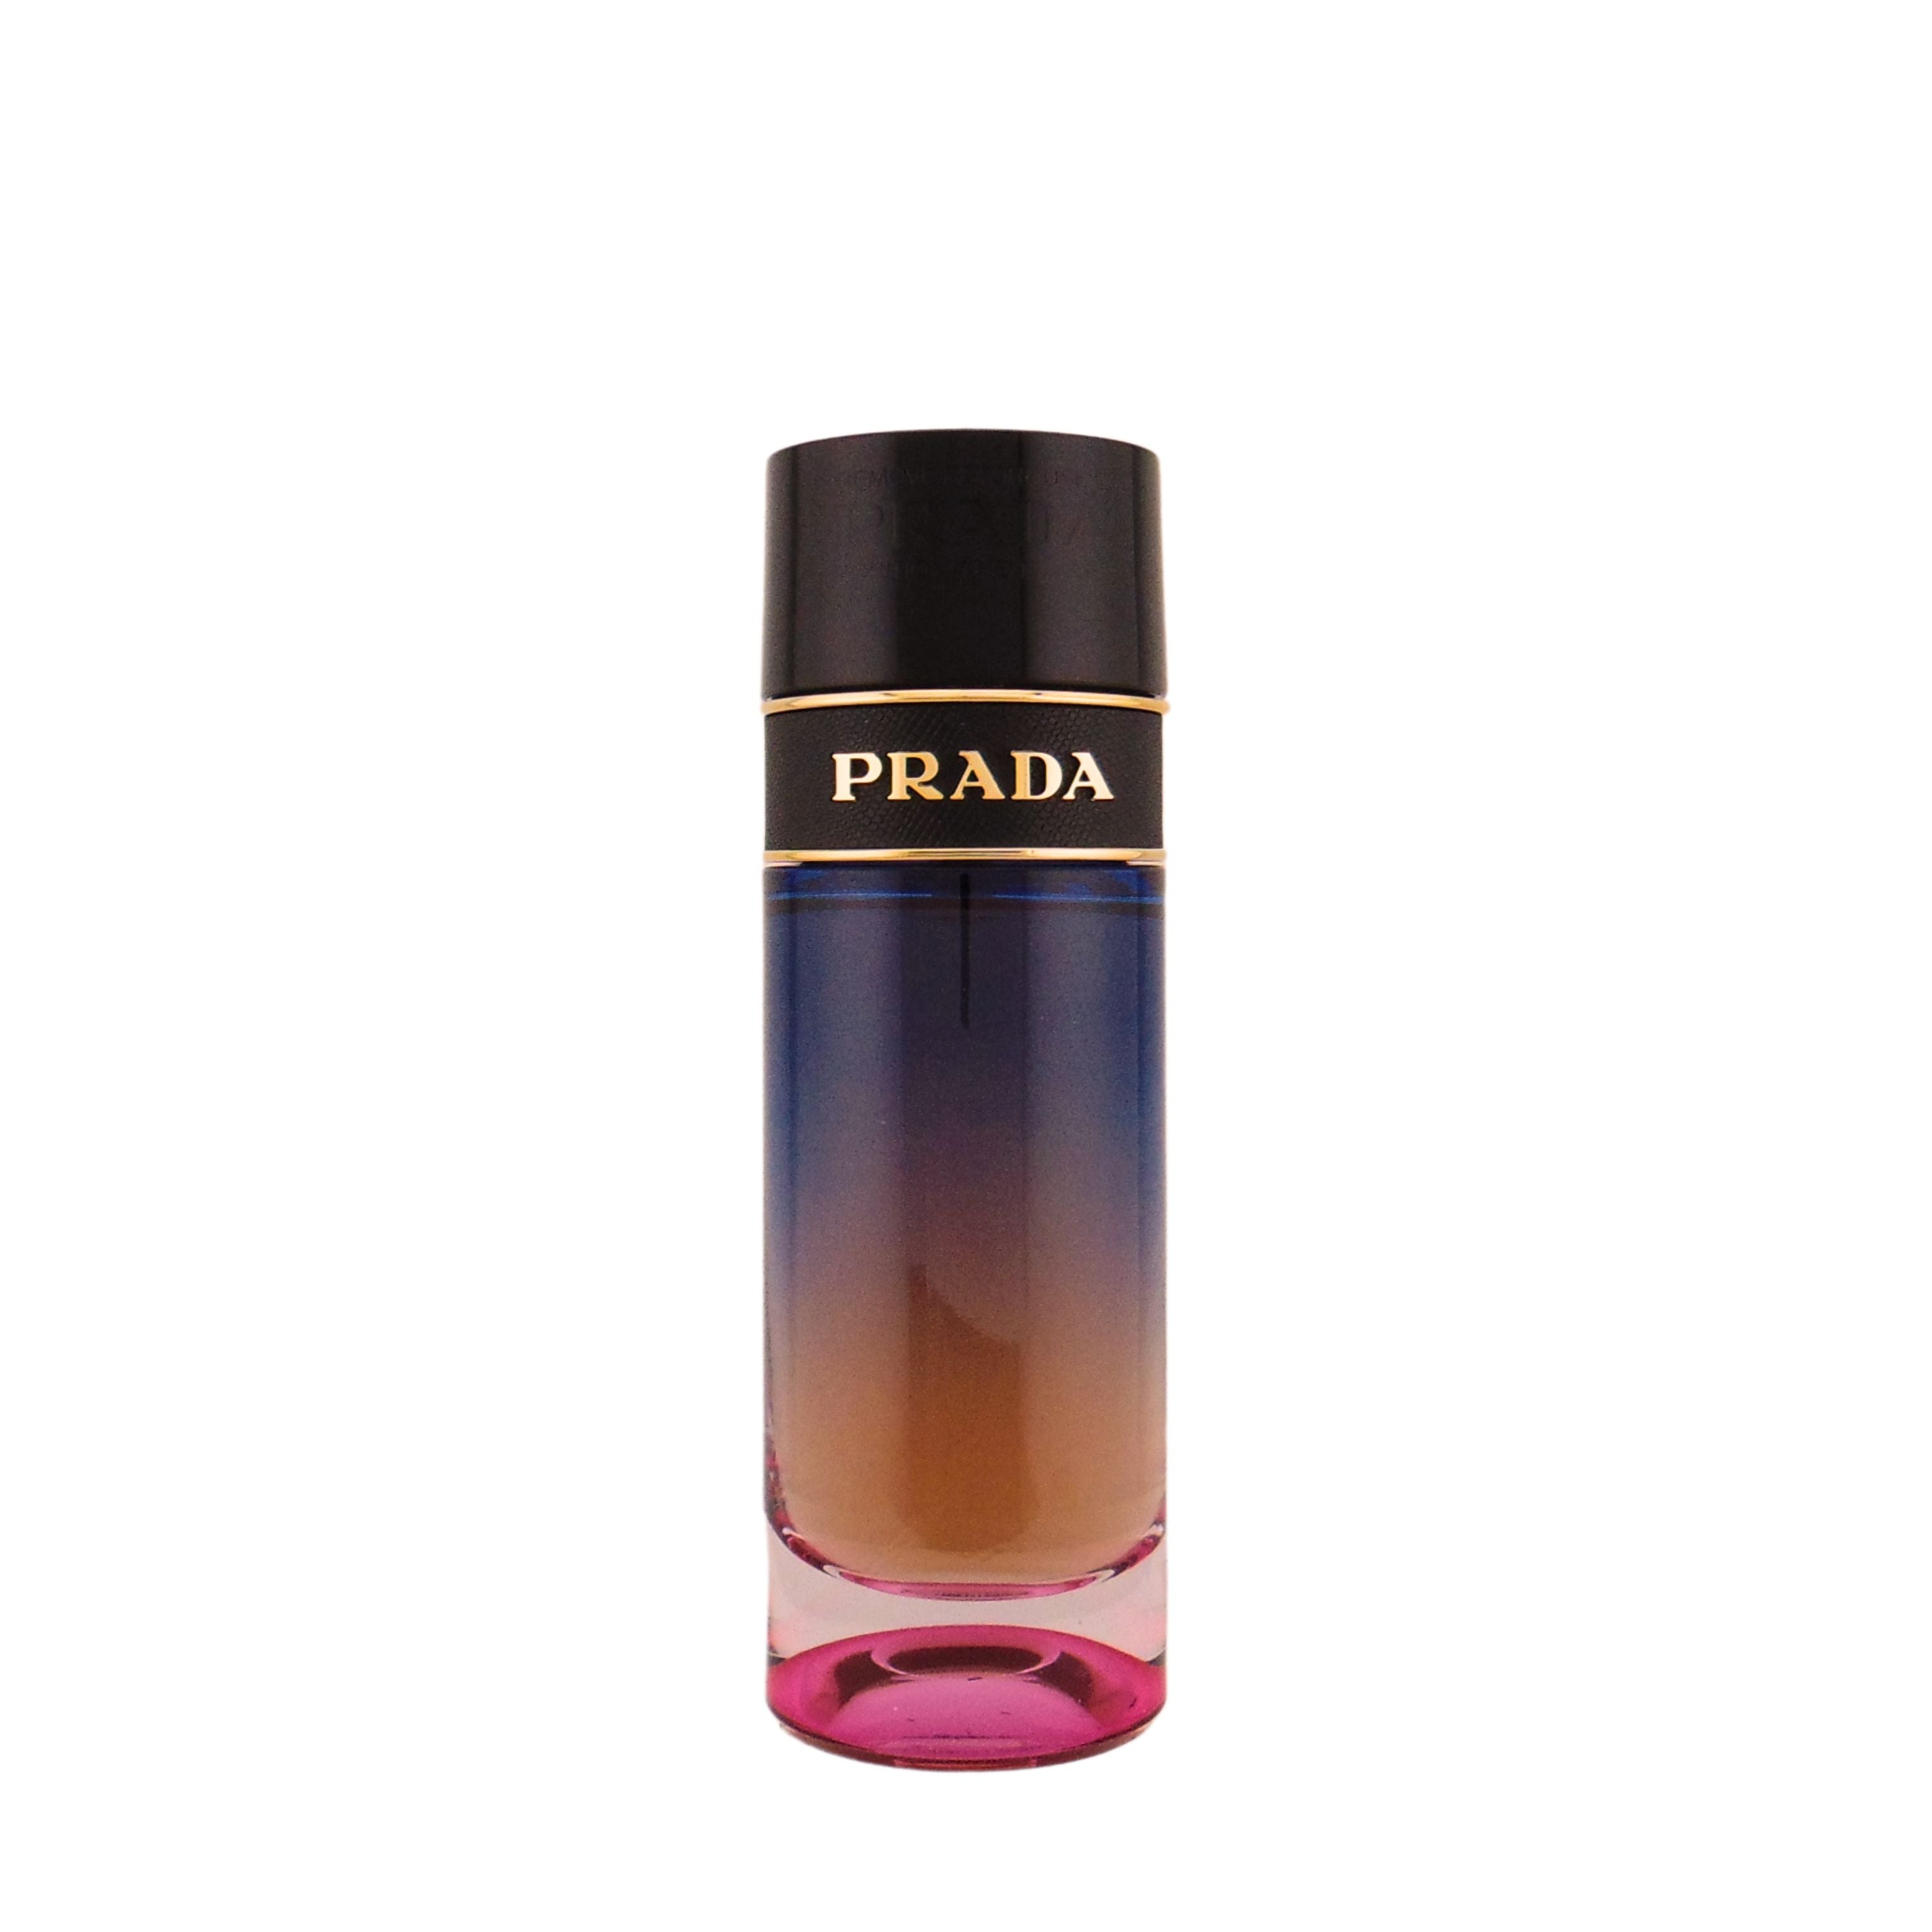 Prada Candy Night Eau de Parfum for Women